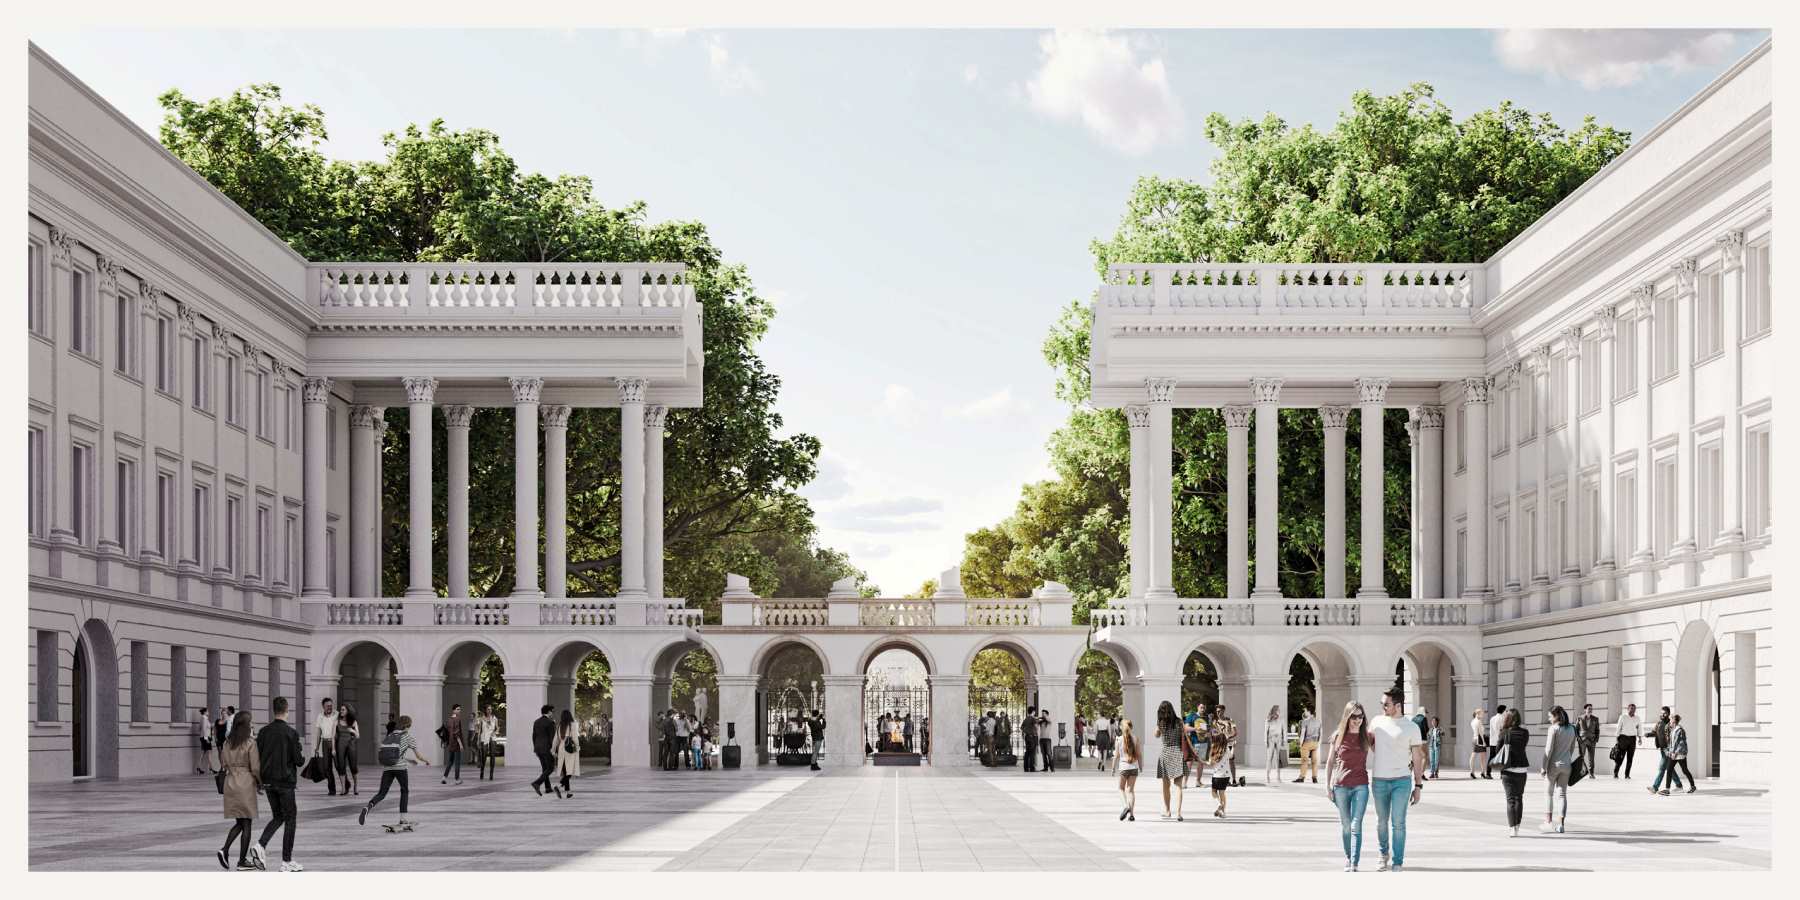 Koncepcja kolumnady Pałacu Saskiego bez odbudowanej środkowej części zgłoszona na konkurs na odbudowę Pałacu Saskiego. W tle zieleń Ogrodu Saskiego, po placu przed budynkiem przechadzają się ludzie.